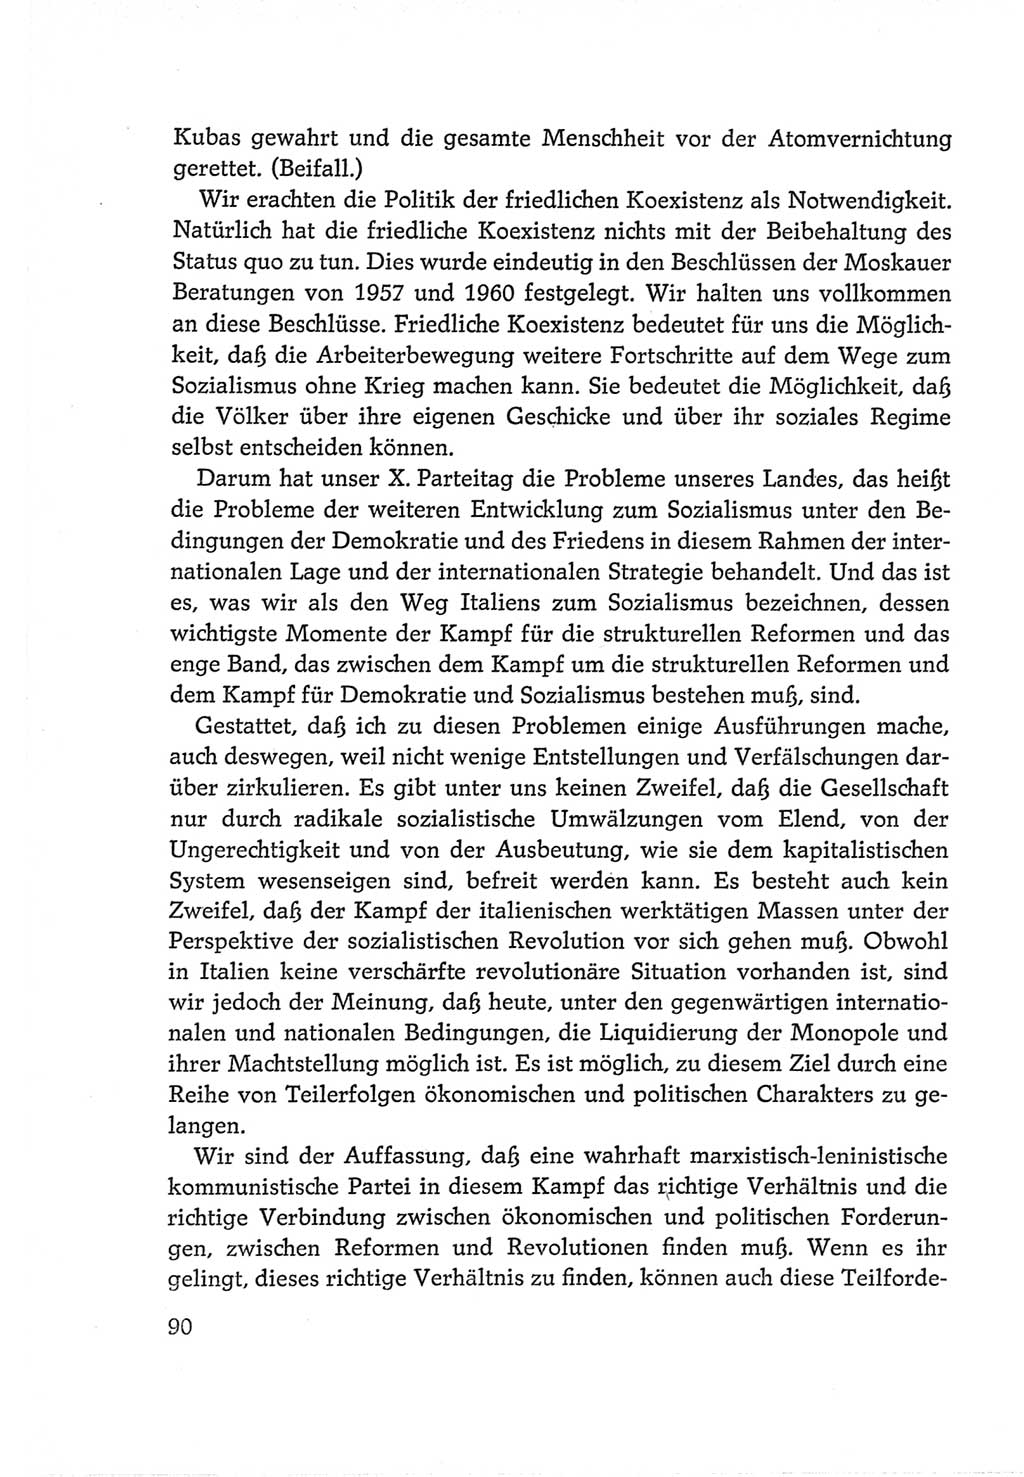 Protokoll der Verhandlungen des Ⅵ. Parteitages der Sozialistischen Einheitspartei Deutschlands (SED) [Deutsche Demokratische Republik (DDR)] 1963, Band Ⅱ, Seite 90 (Prot. Verh. Ⅵ. PT SED DDR 1963, Bd. Ⅱ, S. 90)